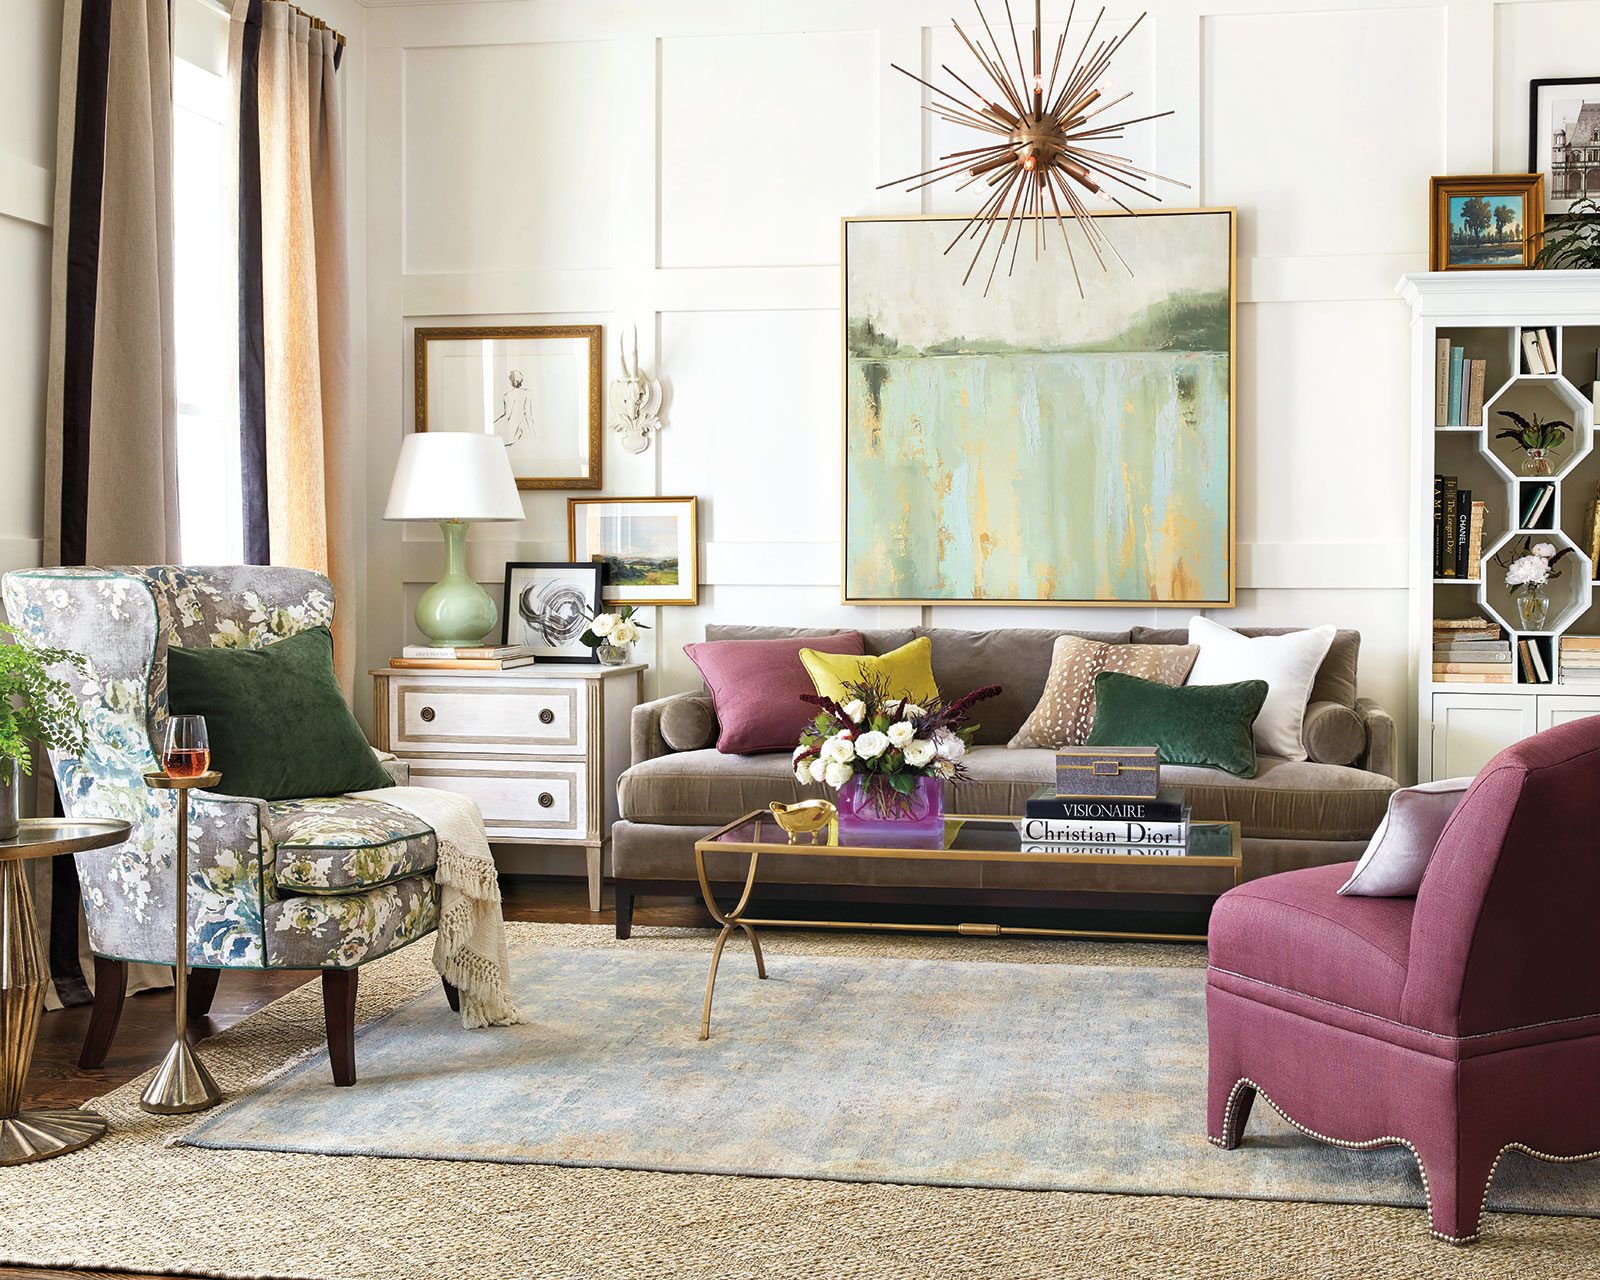 ballard designs living room ideas